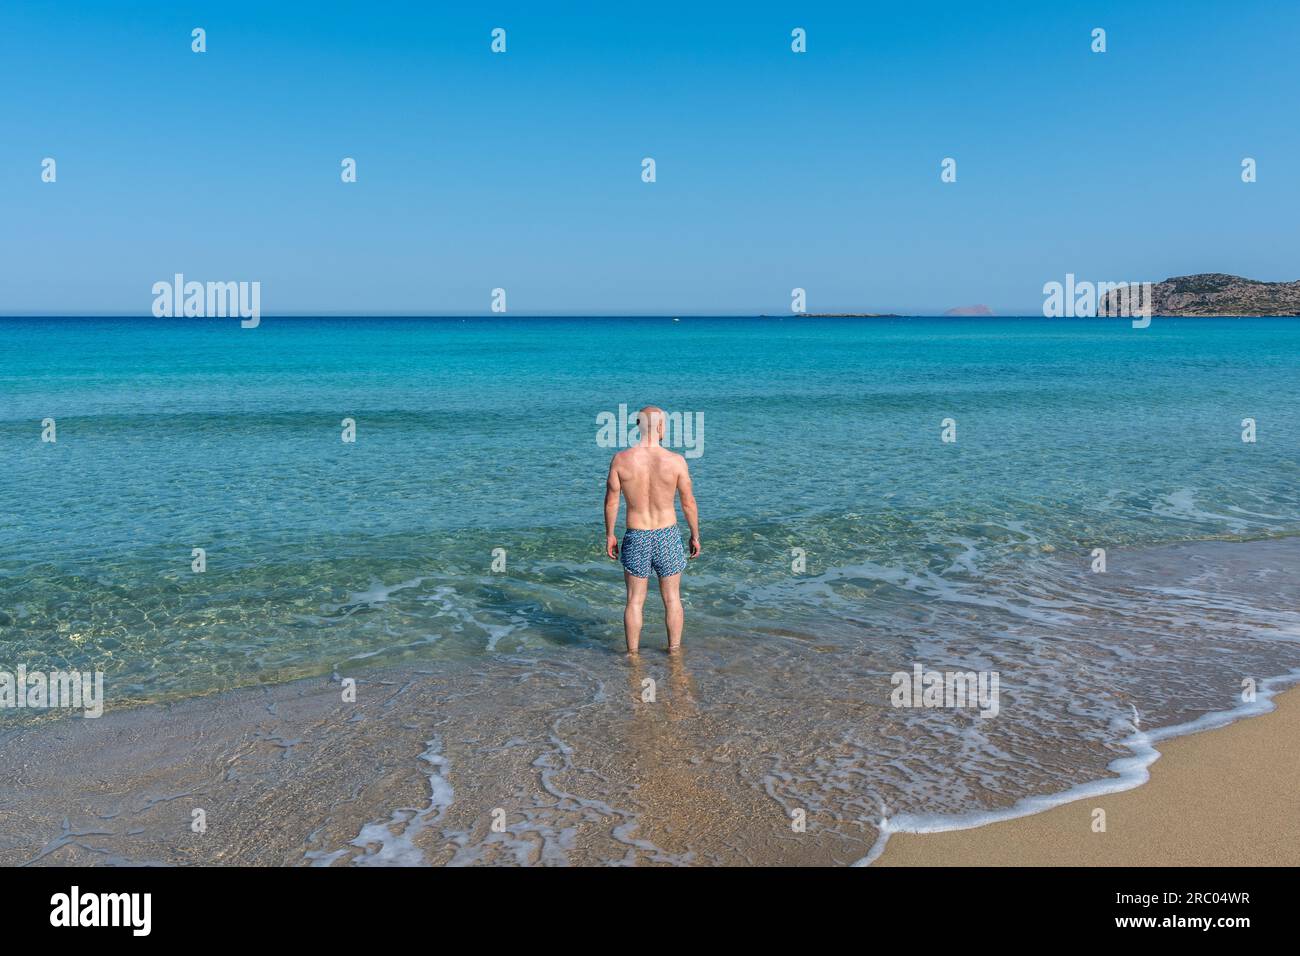 Vista dell'oceano turchese dalla spiaggia con un ragazzo in costume da bagno che guarda all'orizzonte. Desiderio di estate e libertà. Sabbia dorata. Foto Stock